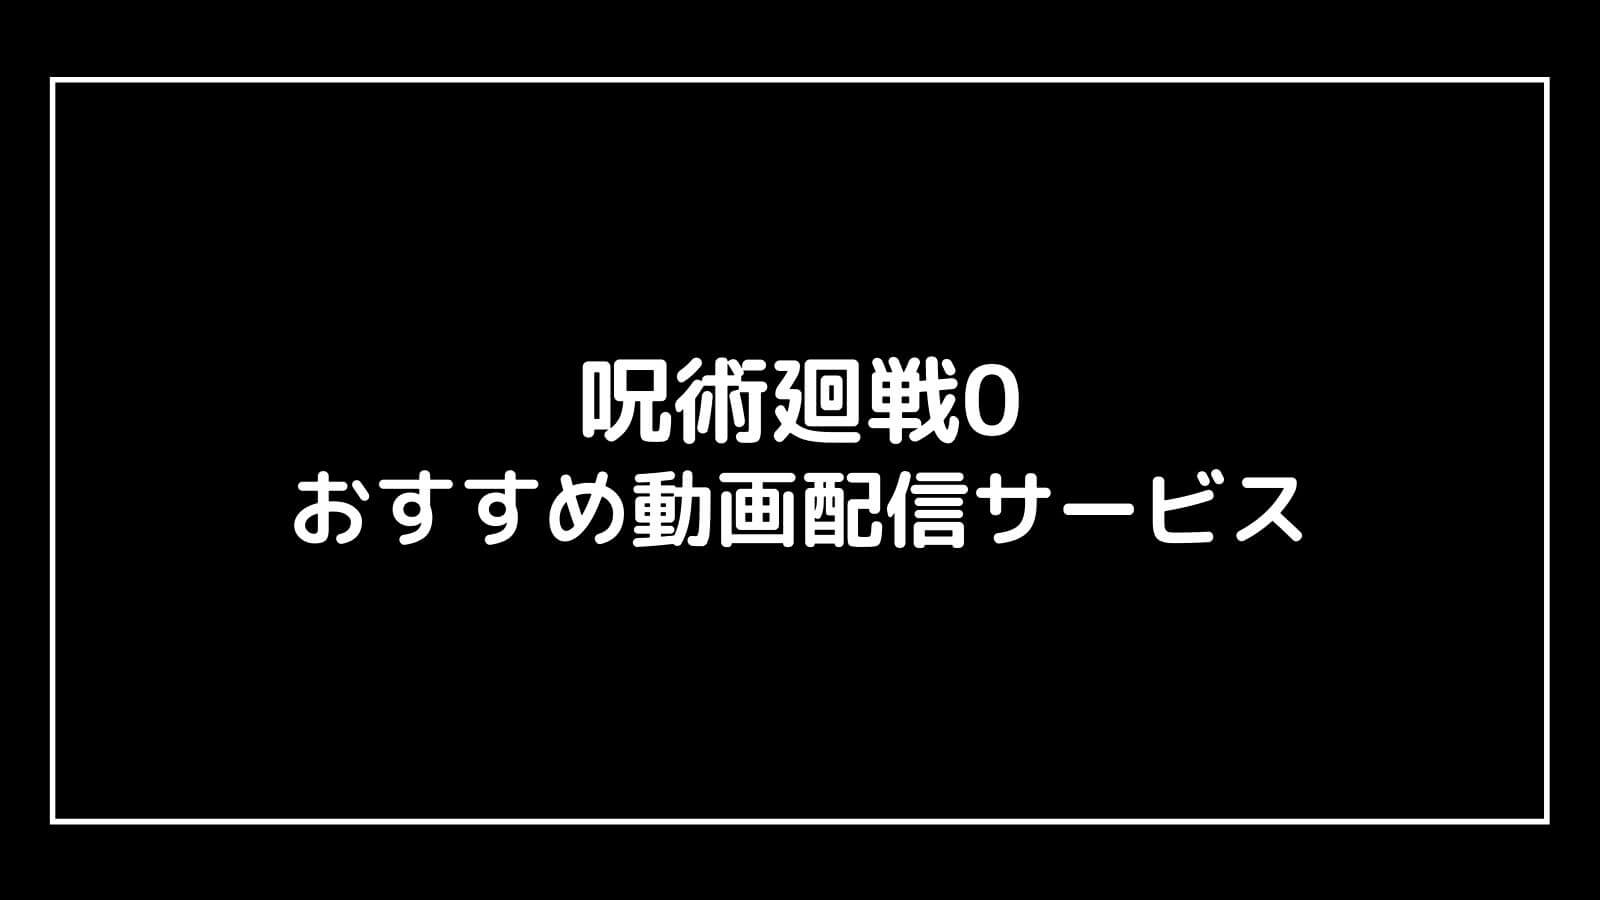 映画『呪術廻戦0』を無料視聴できるおすすめ動画配信サービス【テレビアニメも無料】